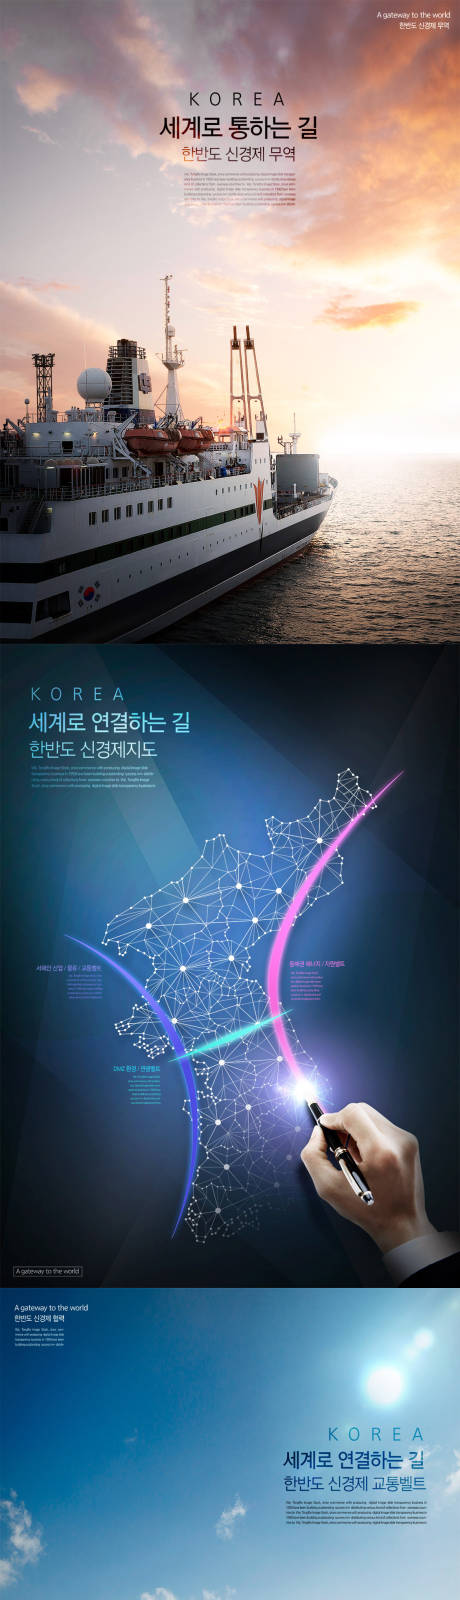 韩国男工程师高铁动车轮船建设海报